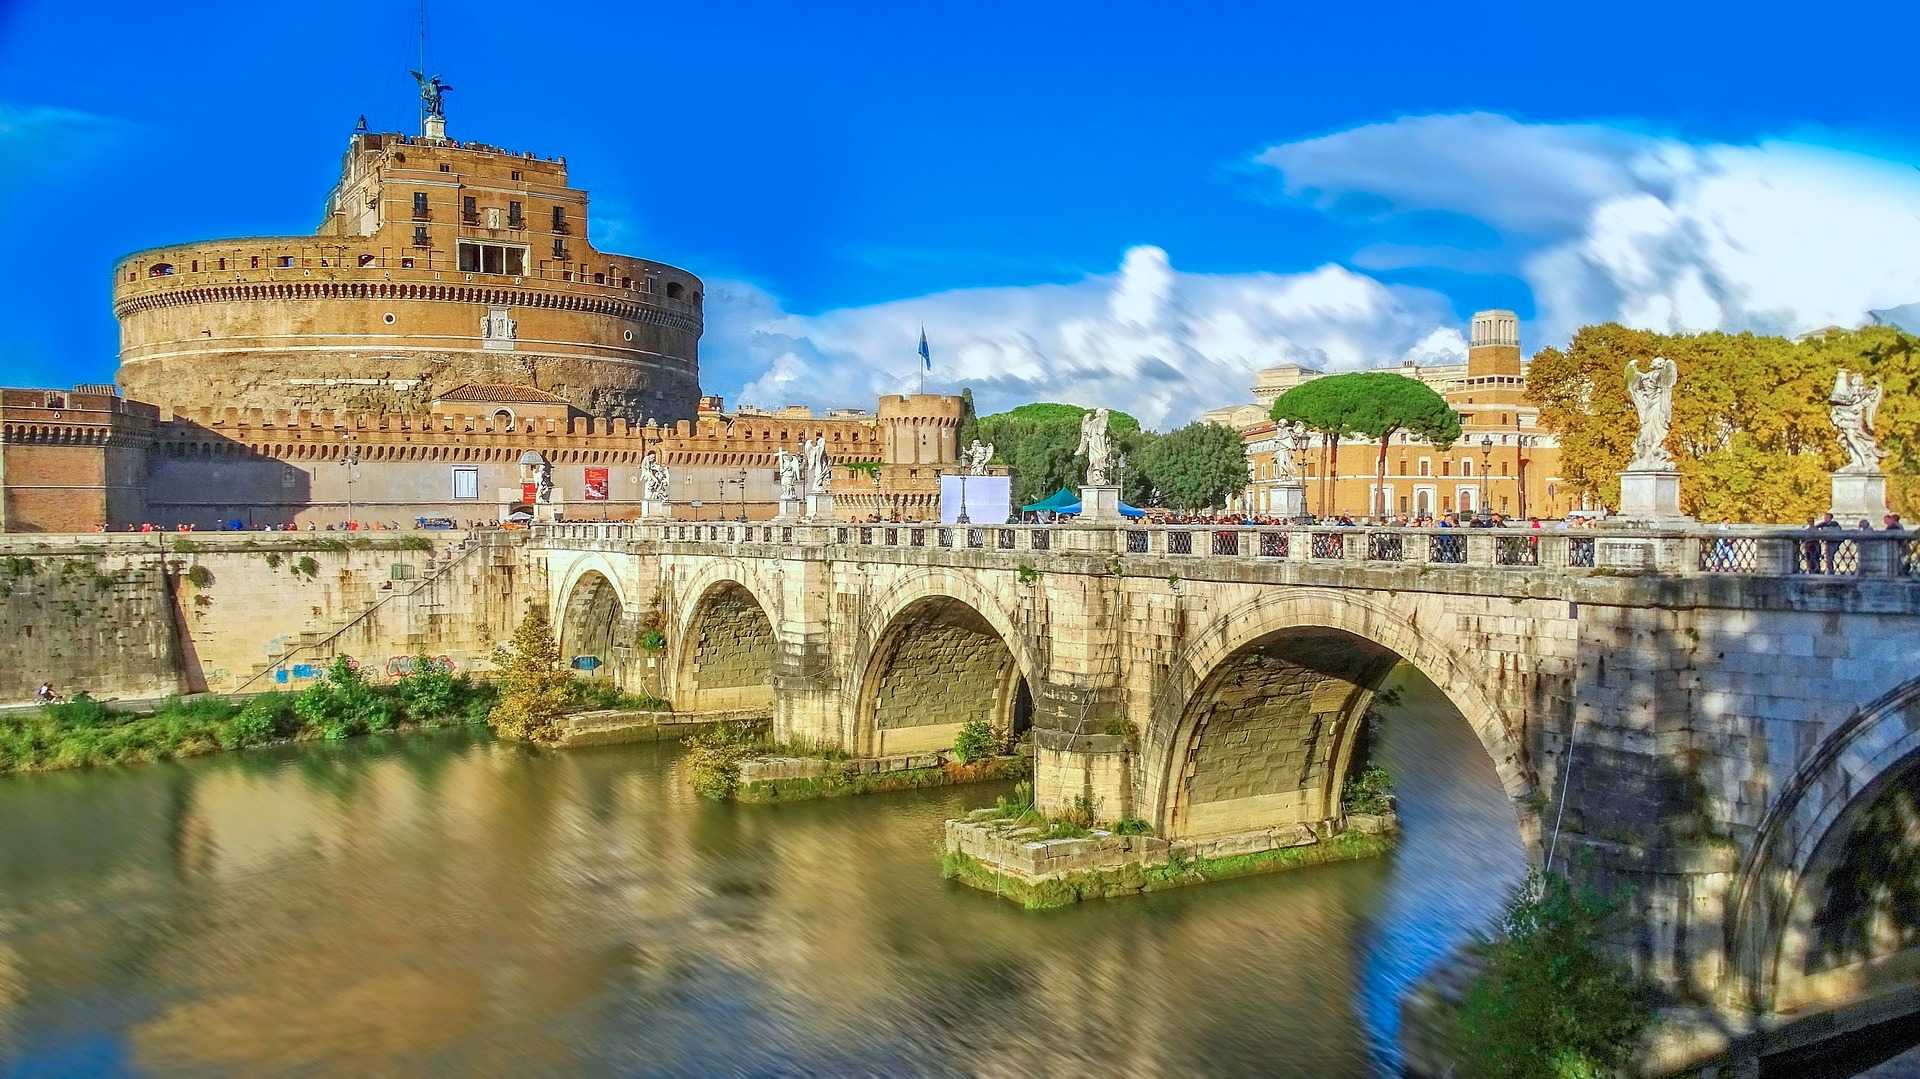 טירת סנטאנג'לו רומא 2022 - כרטיסים, מחירים וטיפים חשובים